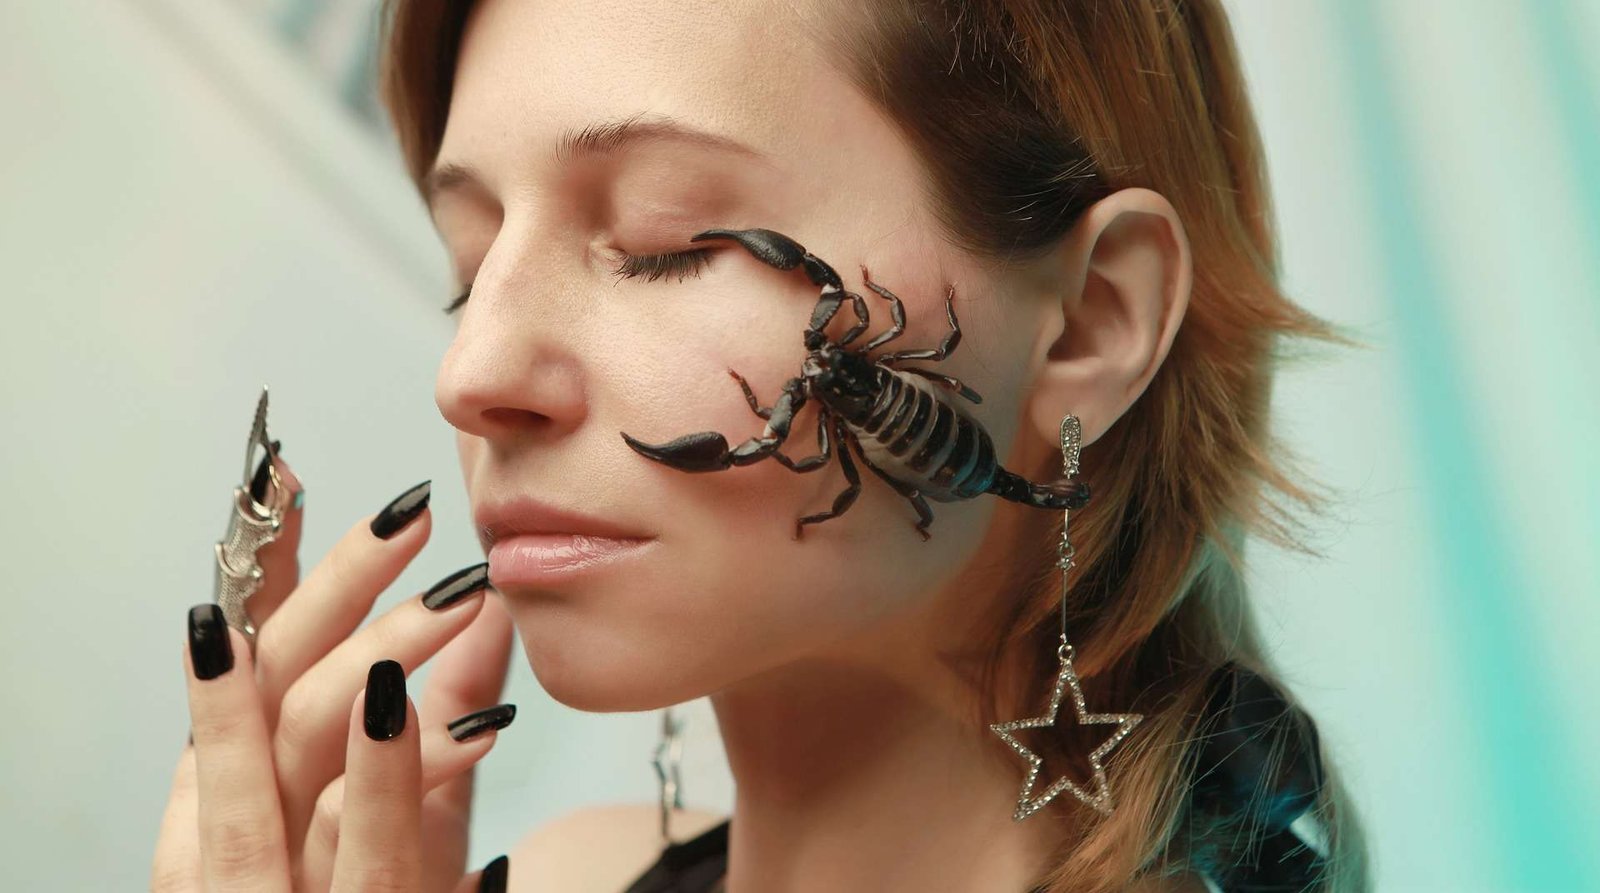 Mulher com unhas compridas e com um escorpião em seu rosto